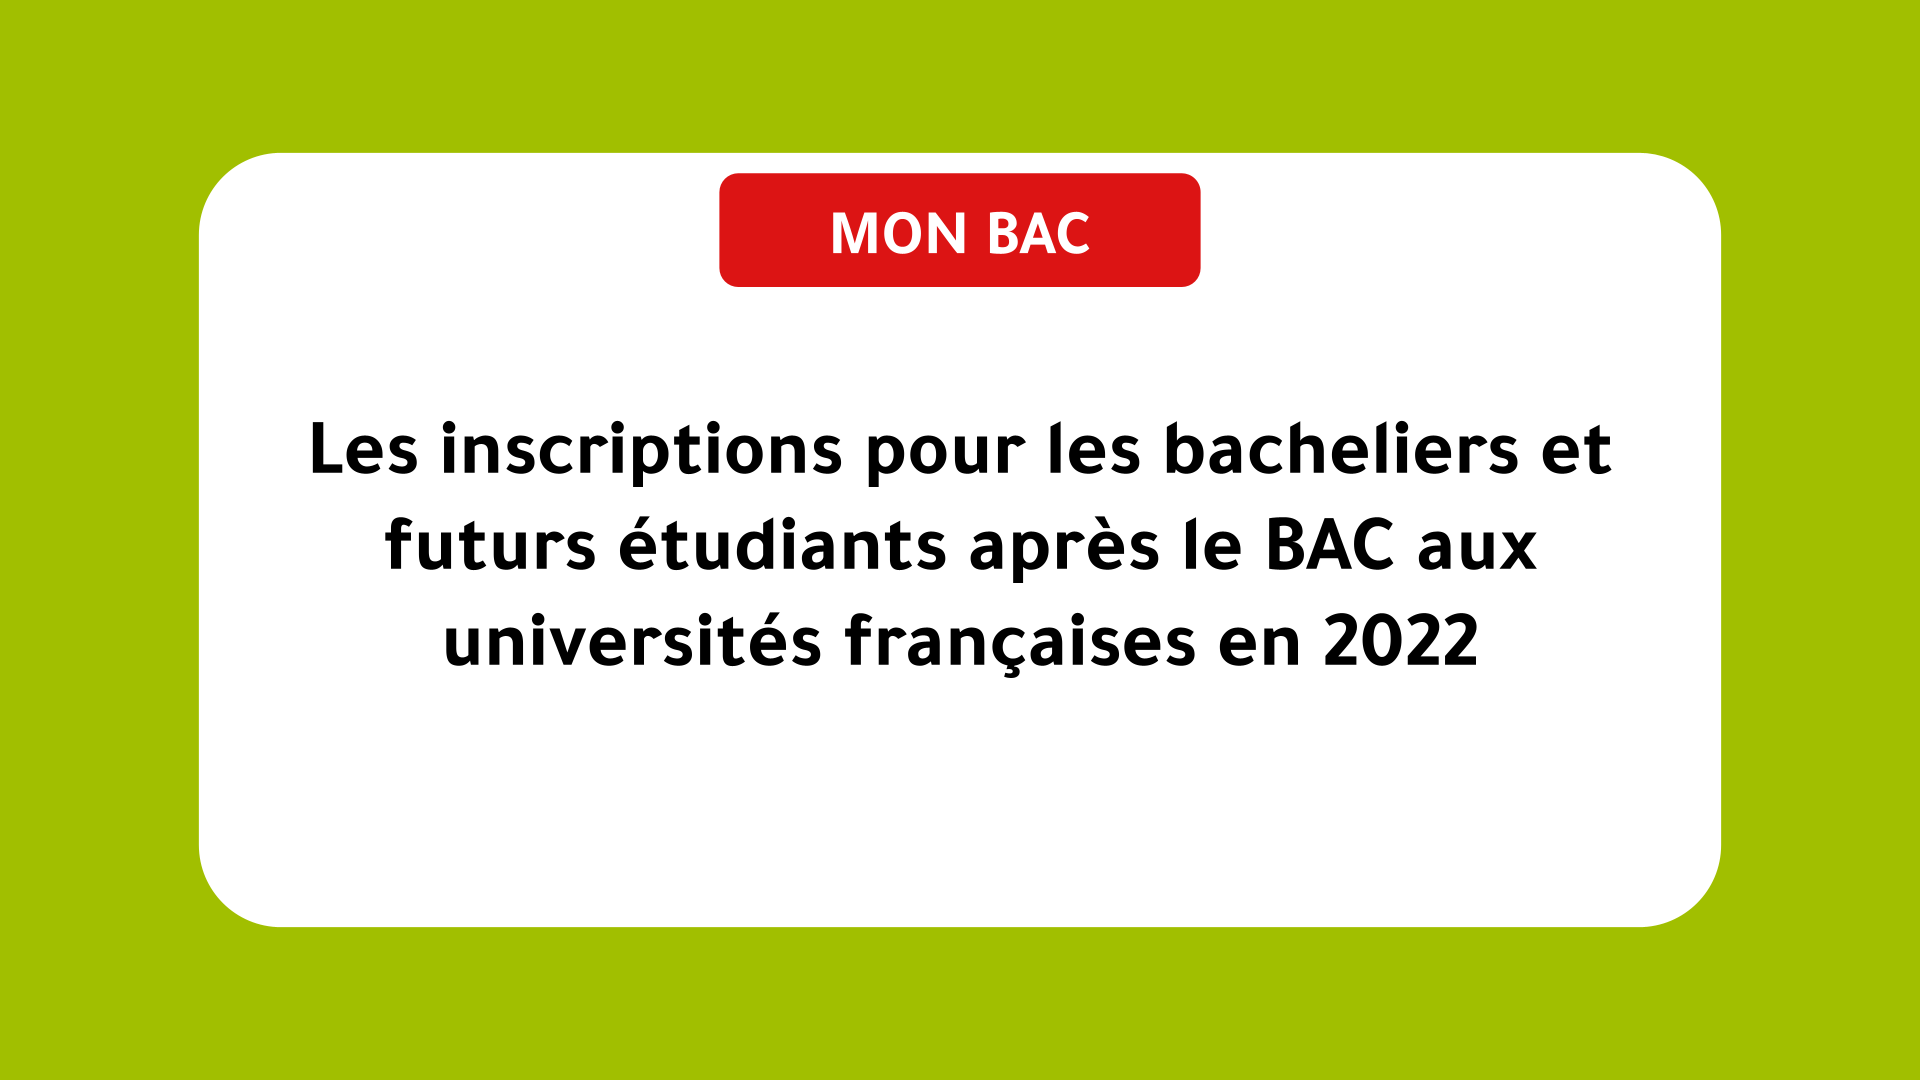 Les inscriptions pour les bacheliers et futurs étudiants après le BAC aux universités françaises en 2022